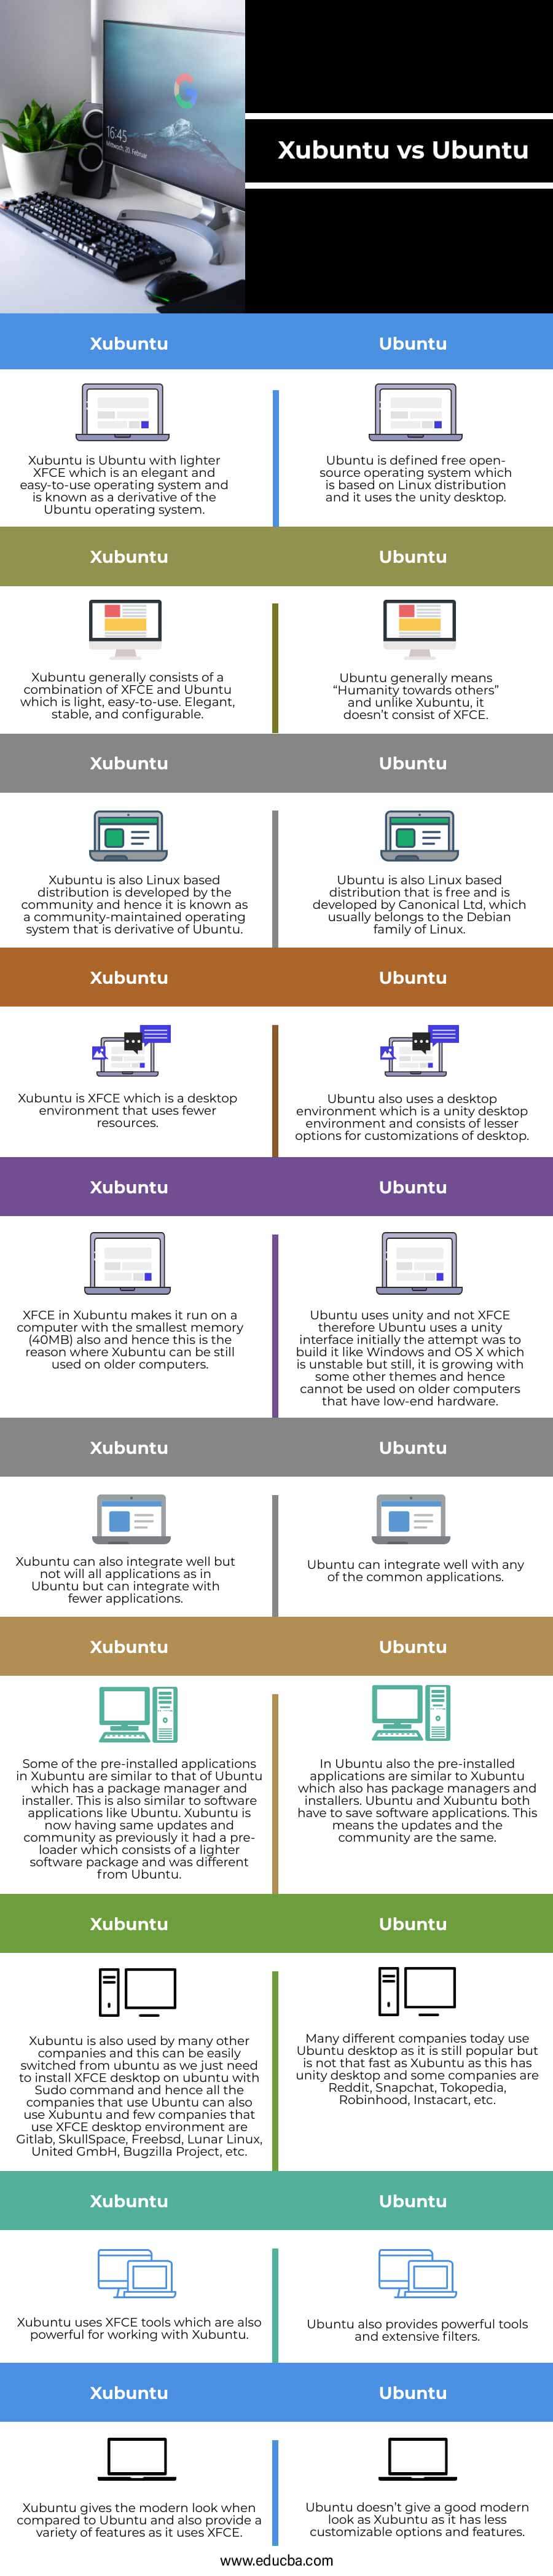 Xubuntu-vs-Ubuntu-info